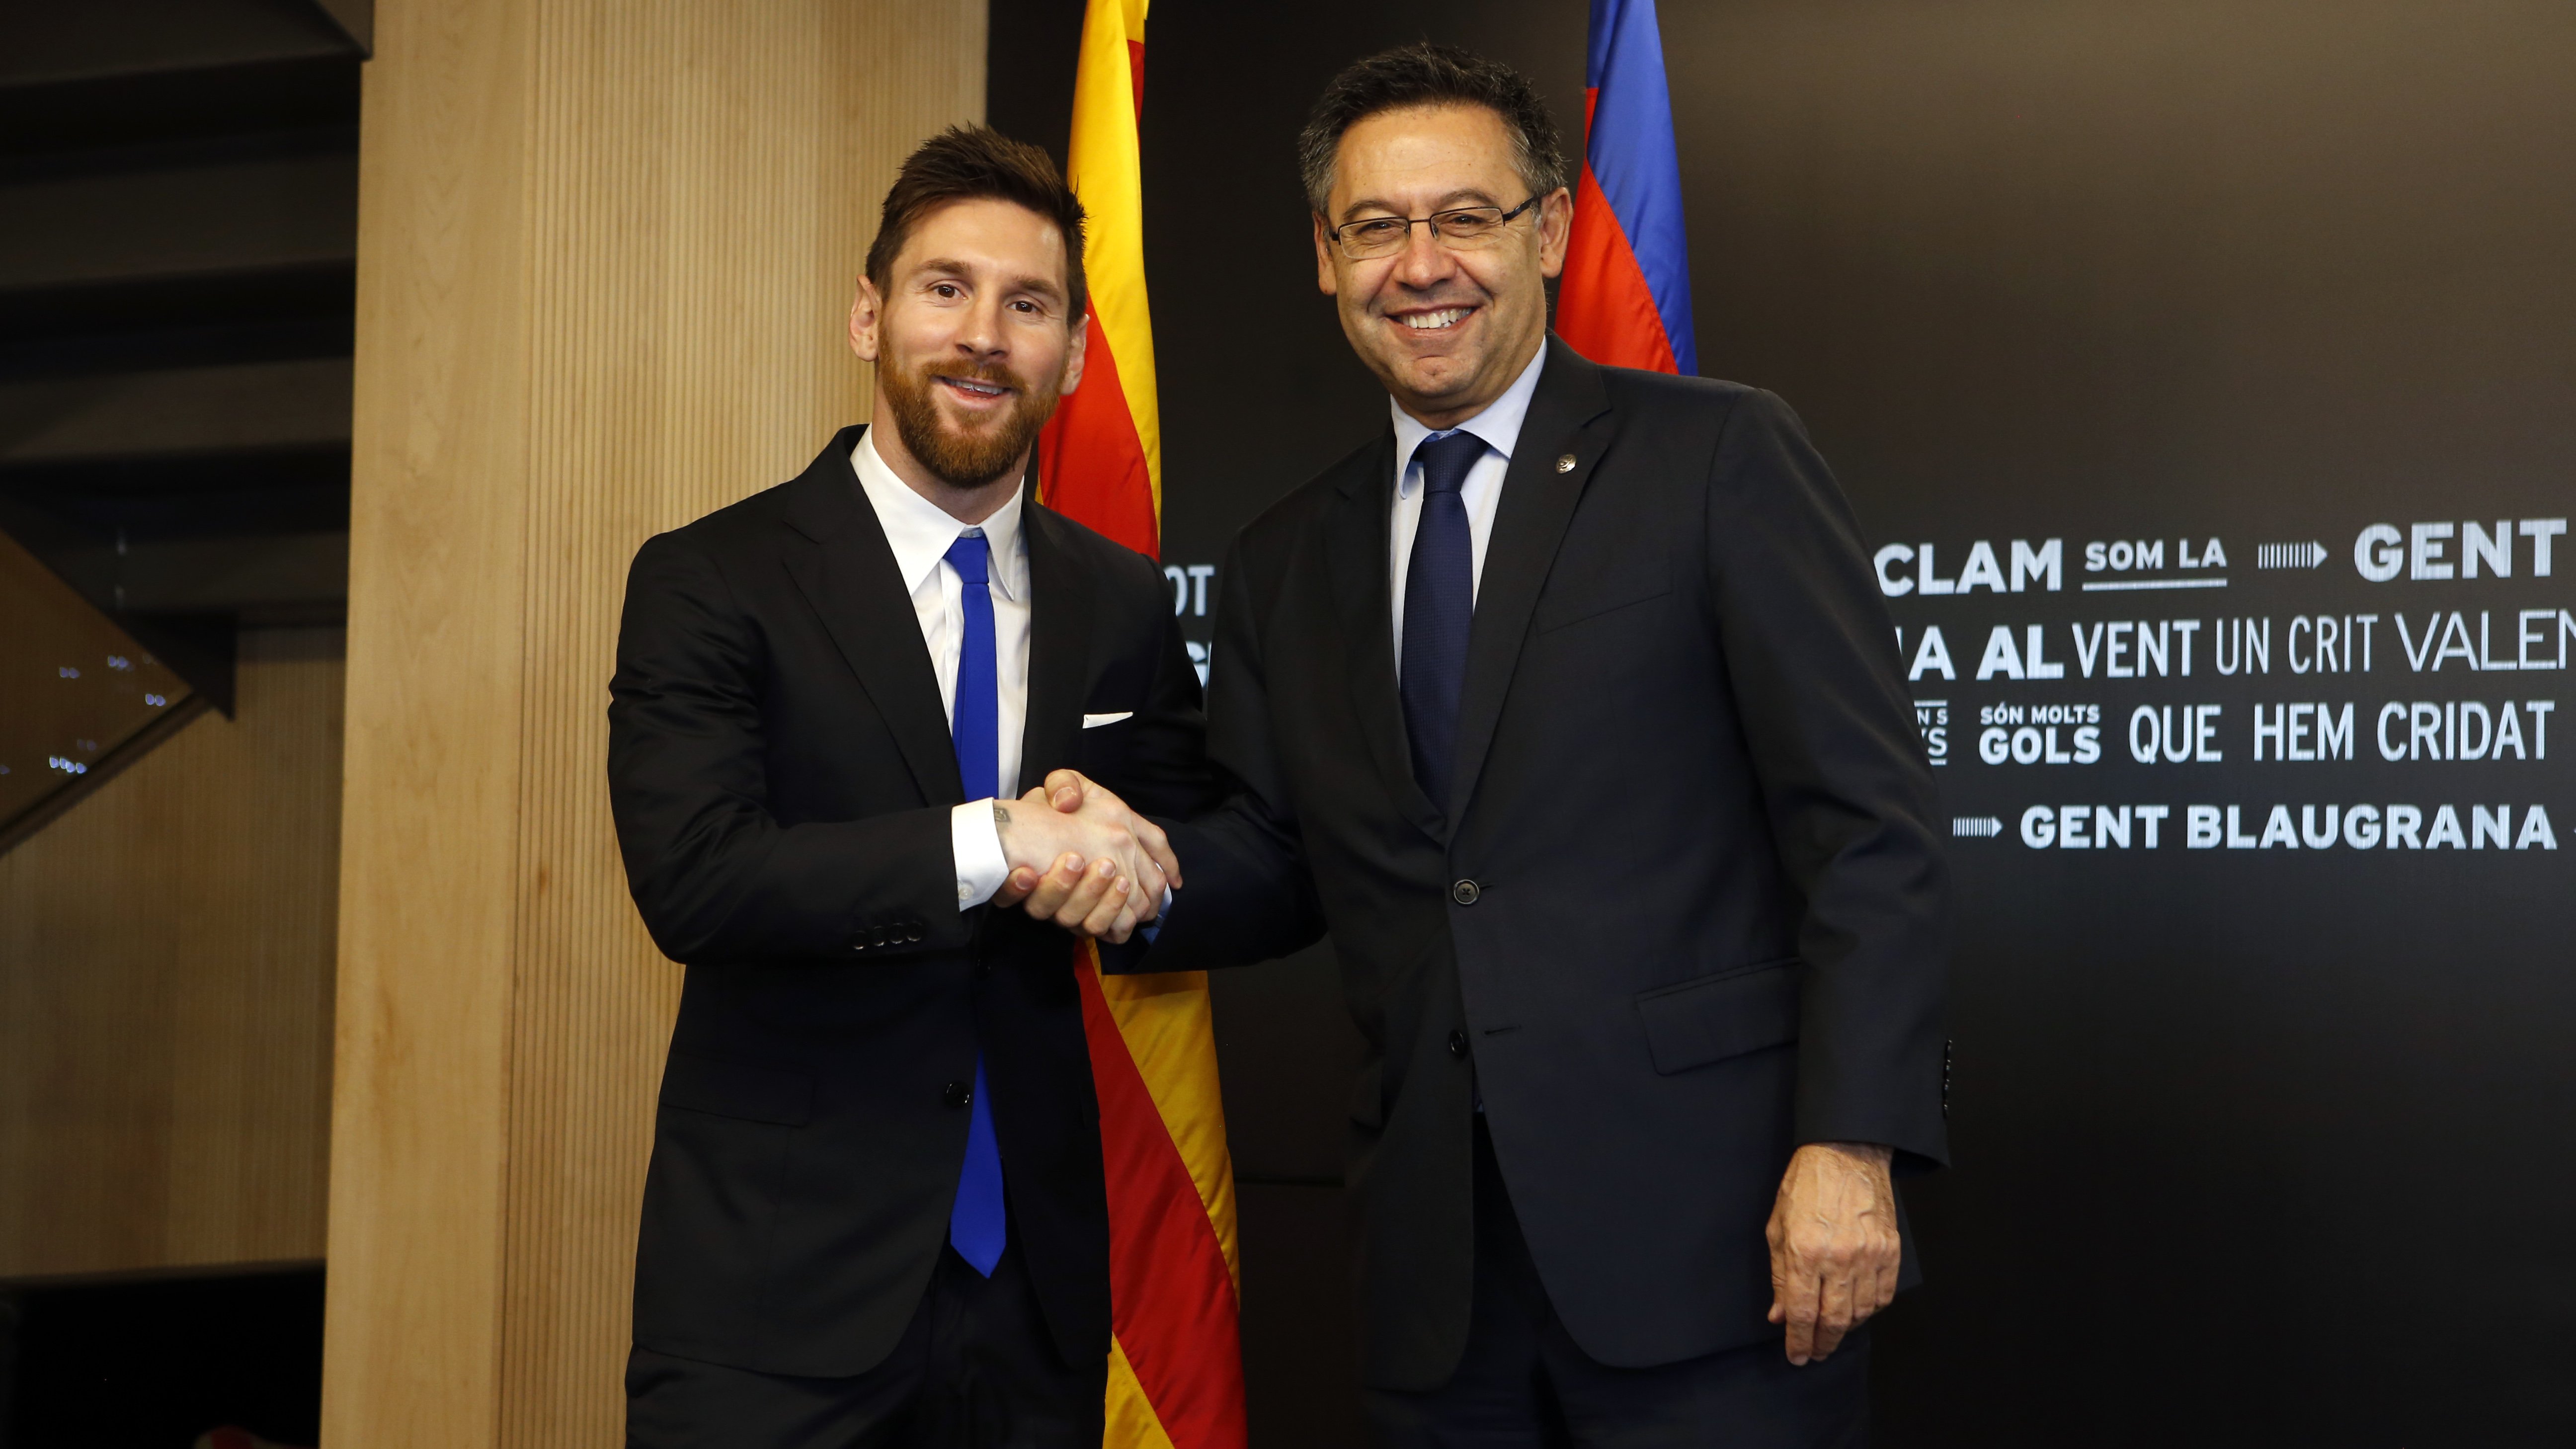 La rebaixa salarial al Barça pot iniciar una guerra judicial amb els futbolistes